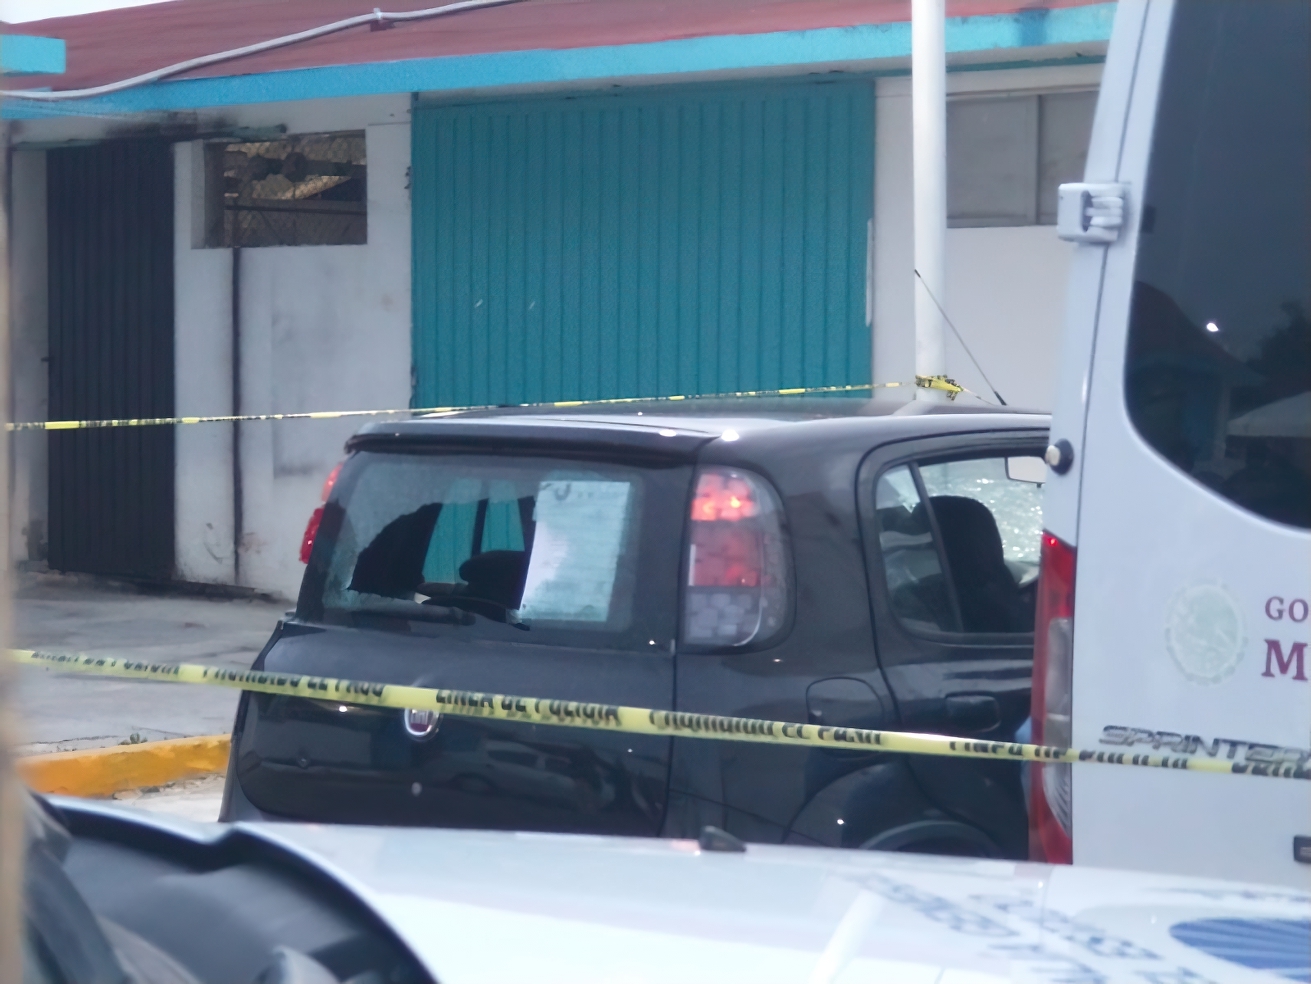 La modelo yucateca y su acompañante fueron atacados a balazos en Chetumal, pero lograron escapar de sus agresores